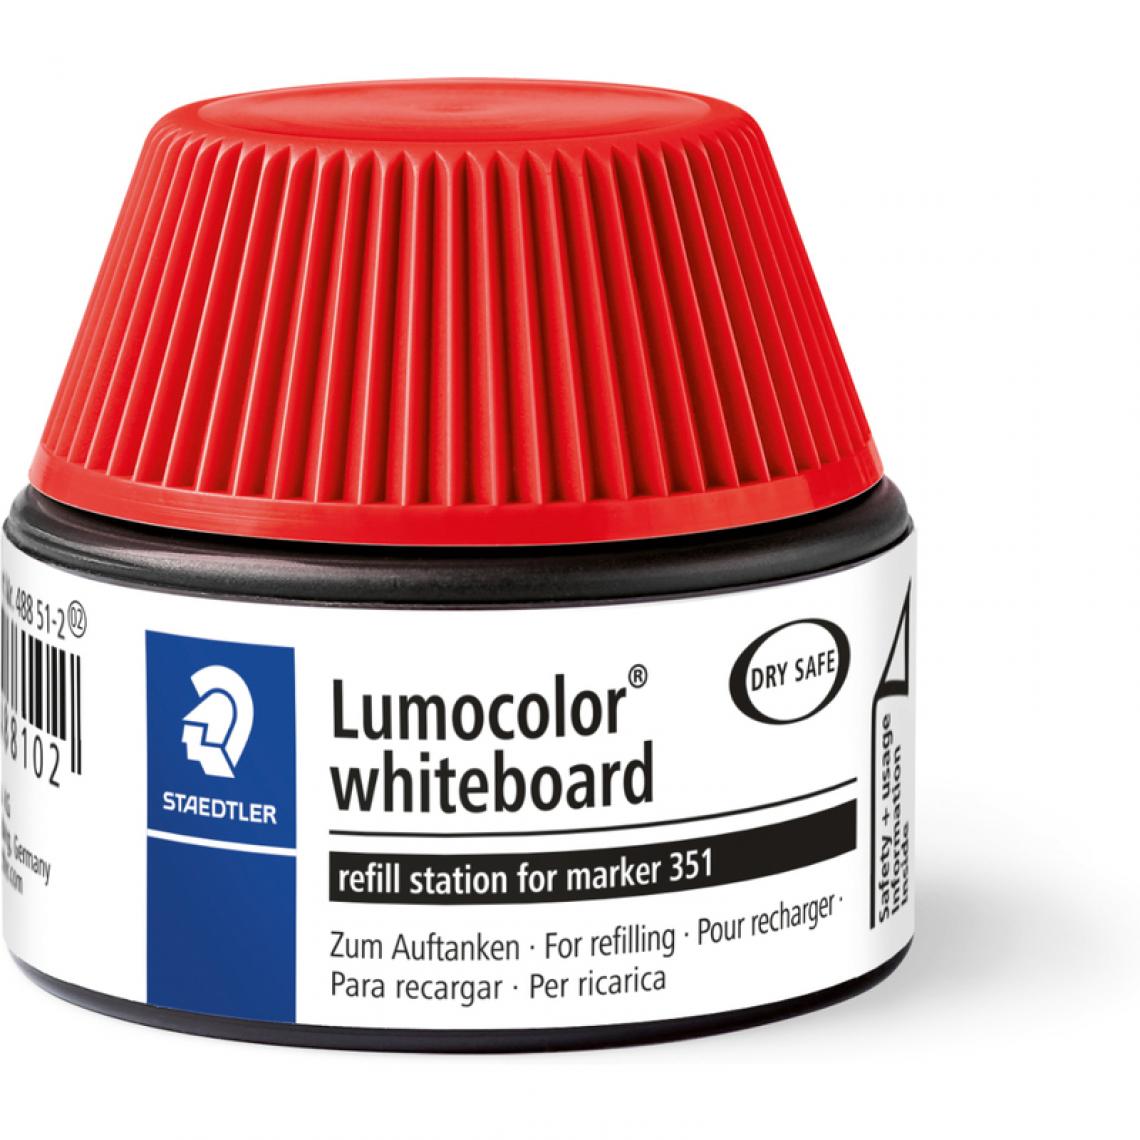 Staedtler - STAEDTLER Flacon de recharge Lumocolor 488 51, rouge () - Accessoires Bureau